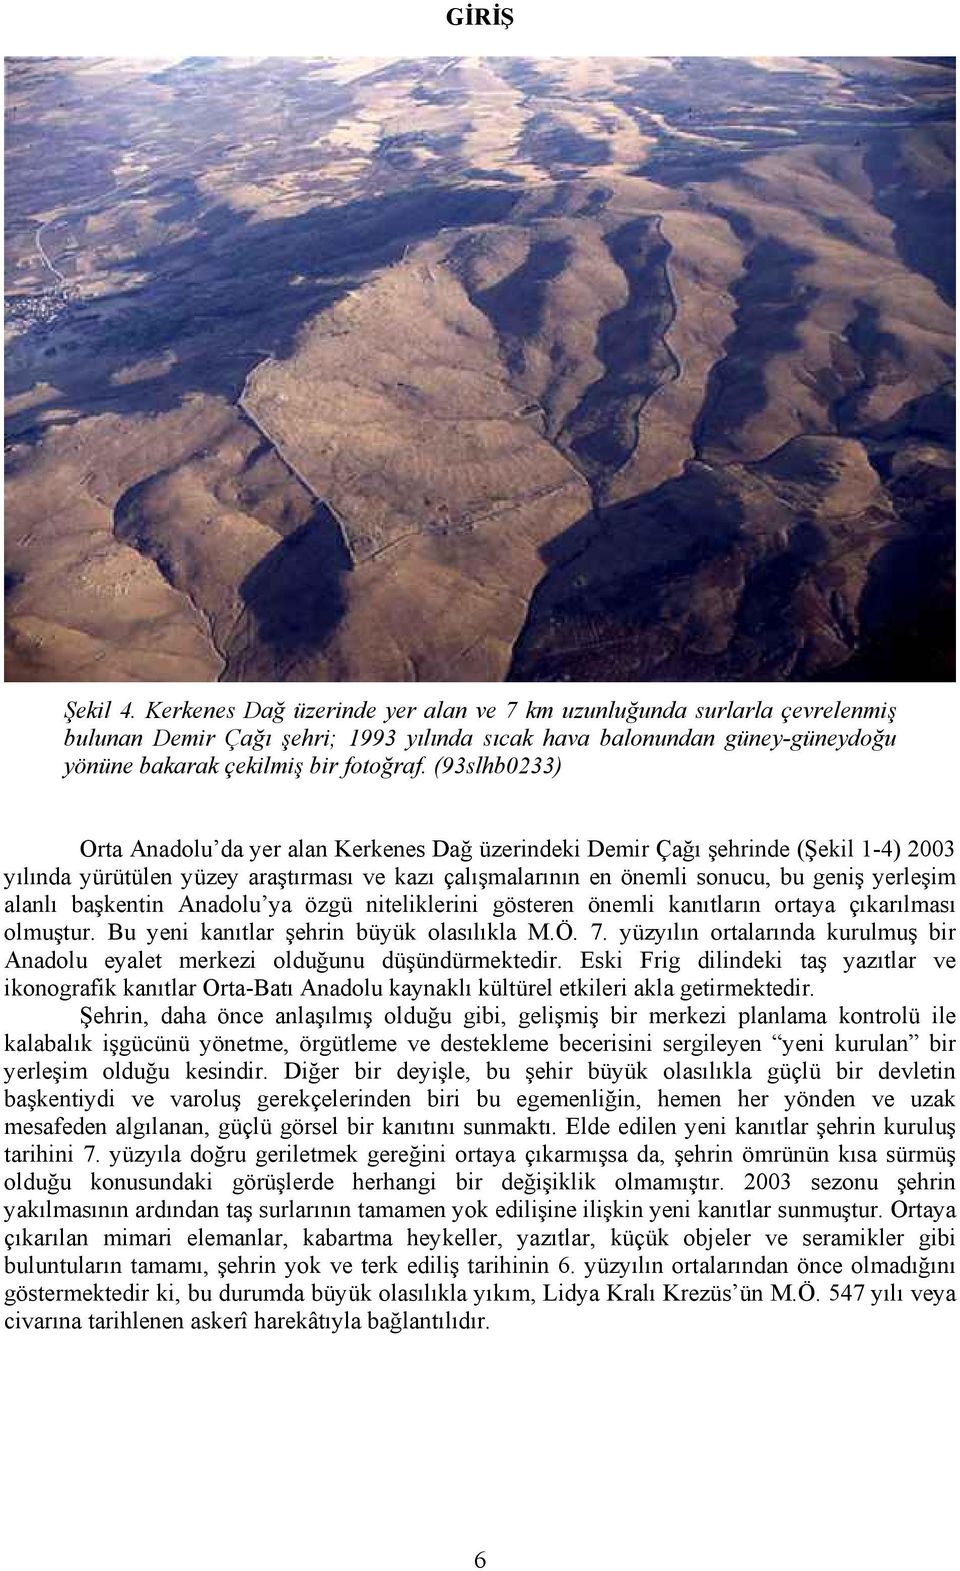 (93slhb0233) Orta Anadolu da yer alan Kerkenes Dağ üzerindeki Demir Çağı şehrinde (Şekil 1-4) 2003 yılında yürütülen yüzey araştırması ve kazı çalışmalarının en önemli sonucu, bu geniş yerleşim